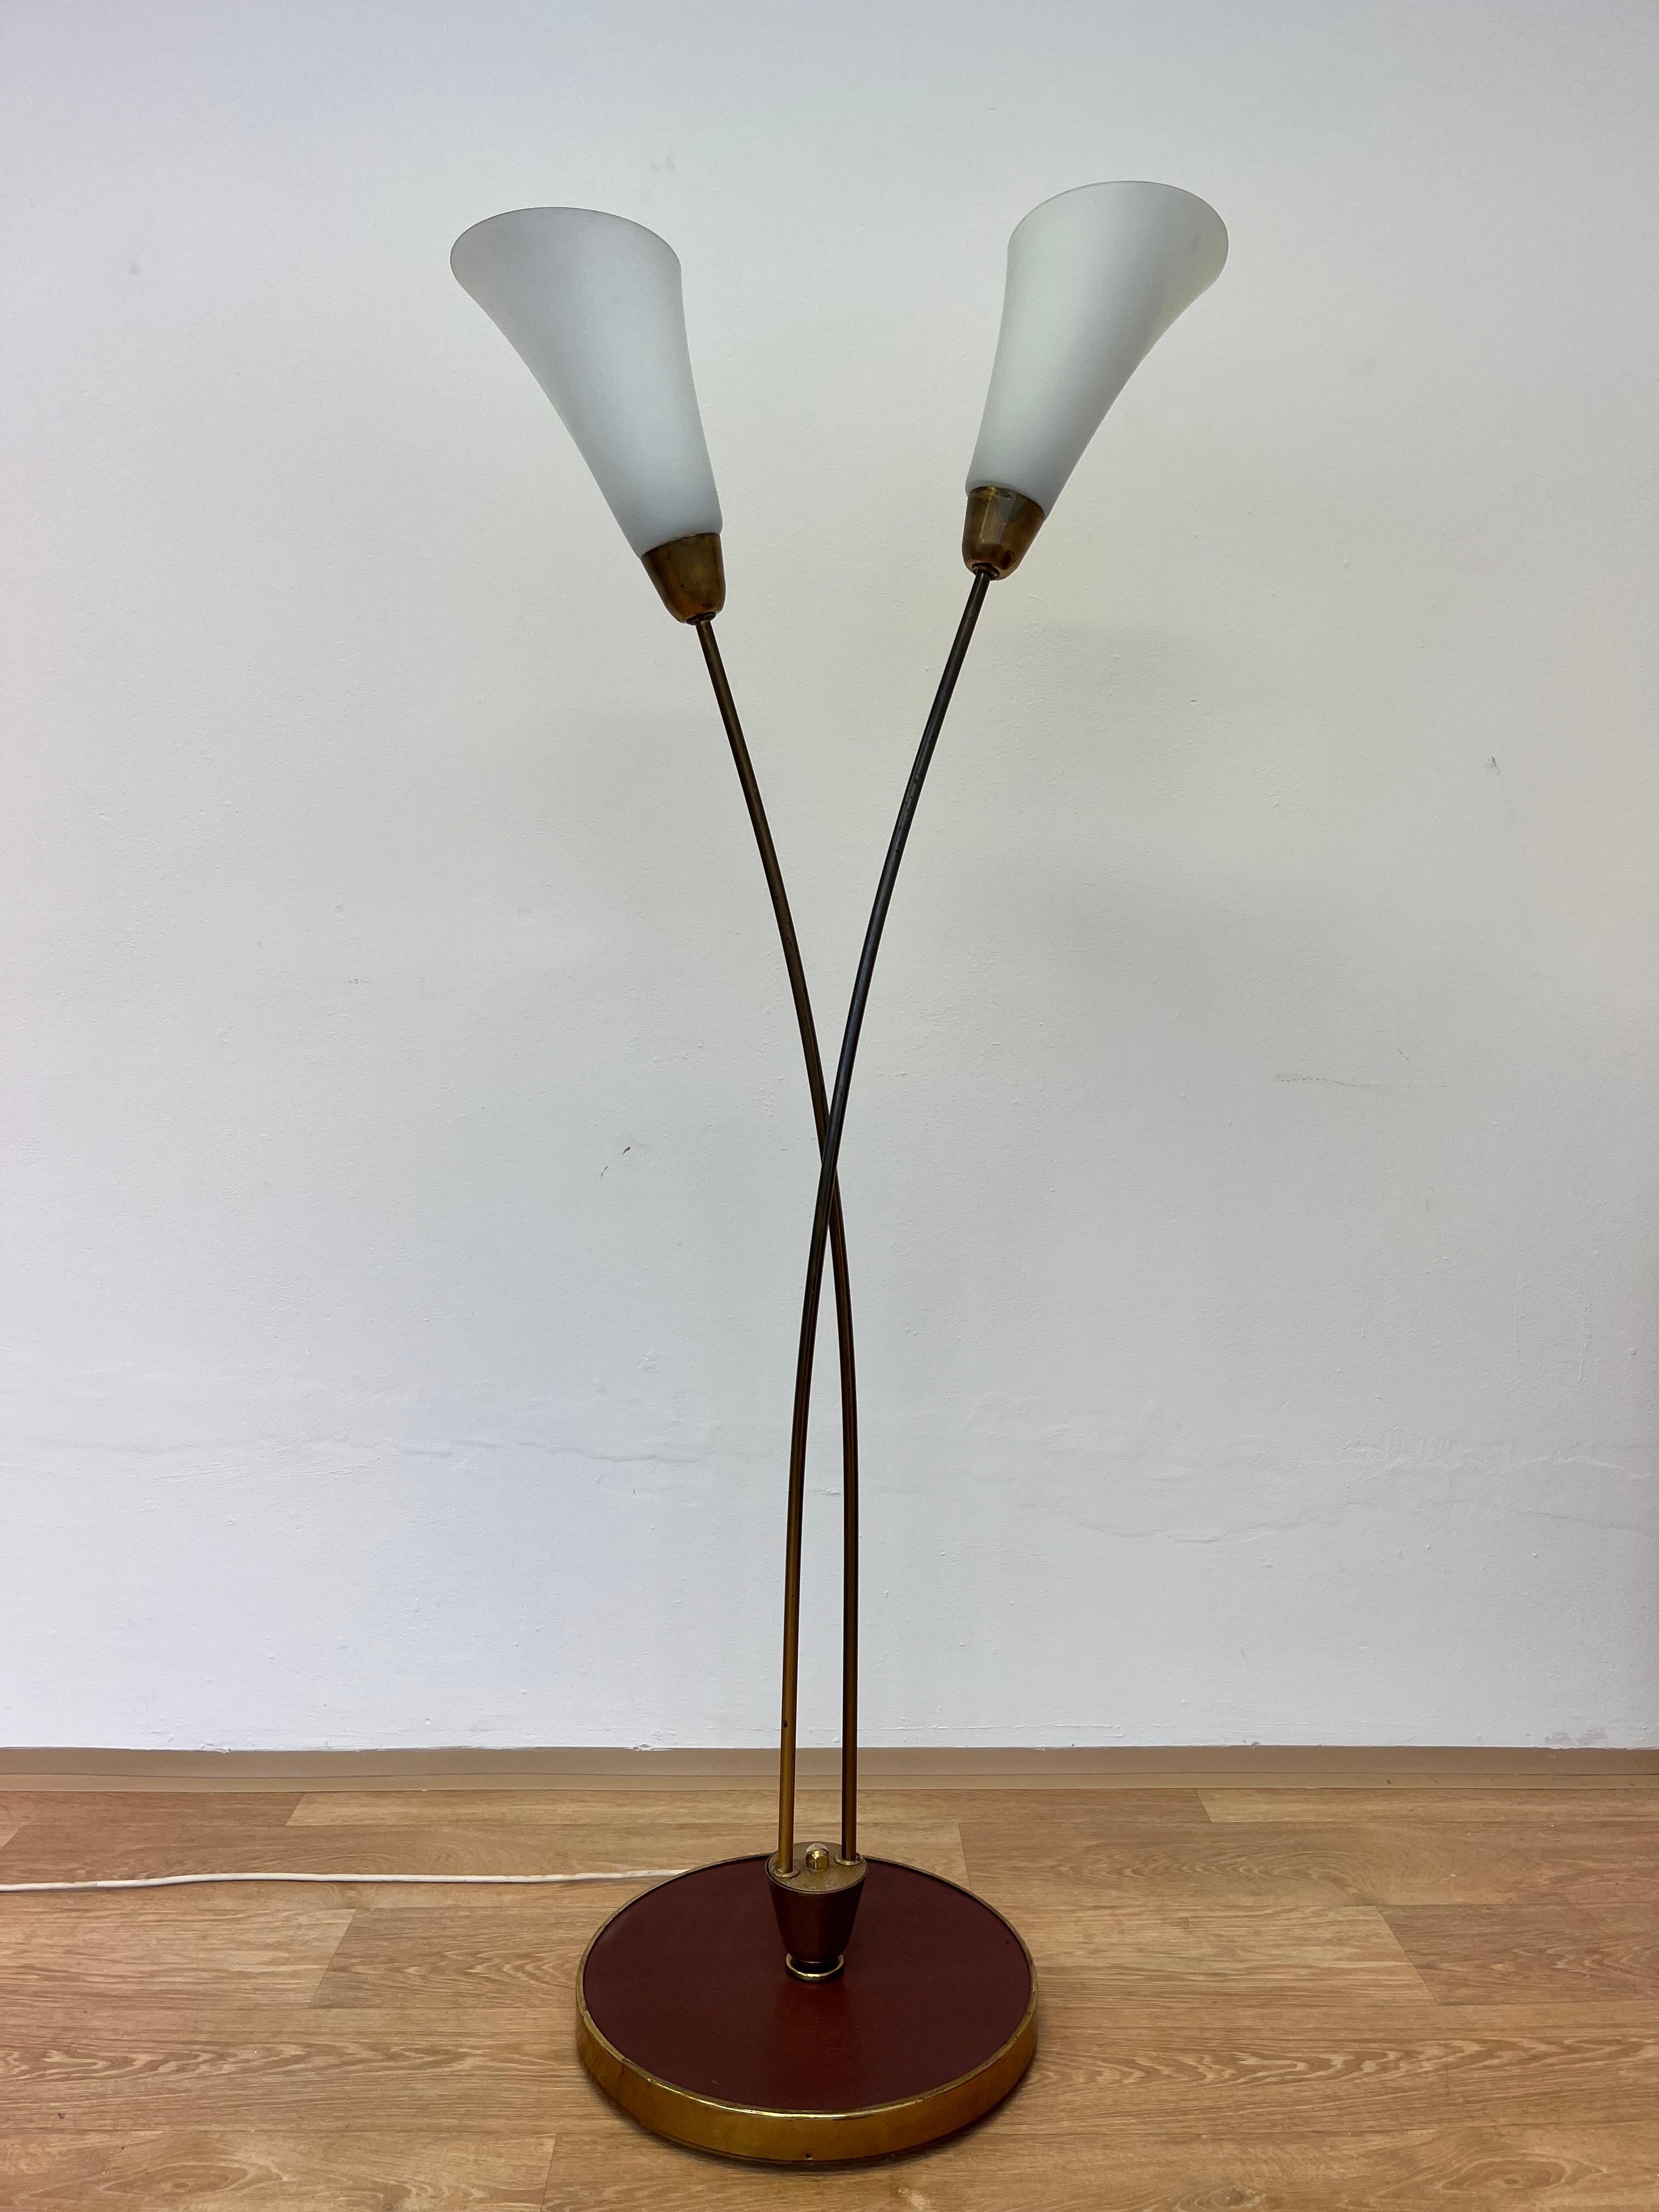 - 1940s
- En laiton
- Teintes opalines
- État d'origine avec patine
- Base de la lampe - linoléum
- Dimensions : Diamètre de la base 40 cm.
jrrf